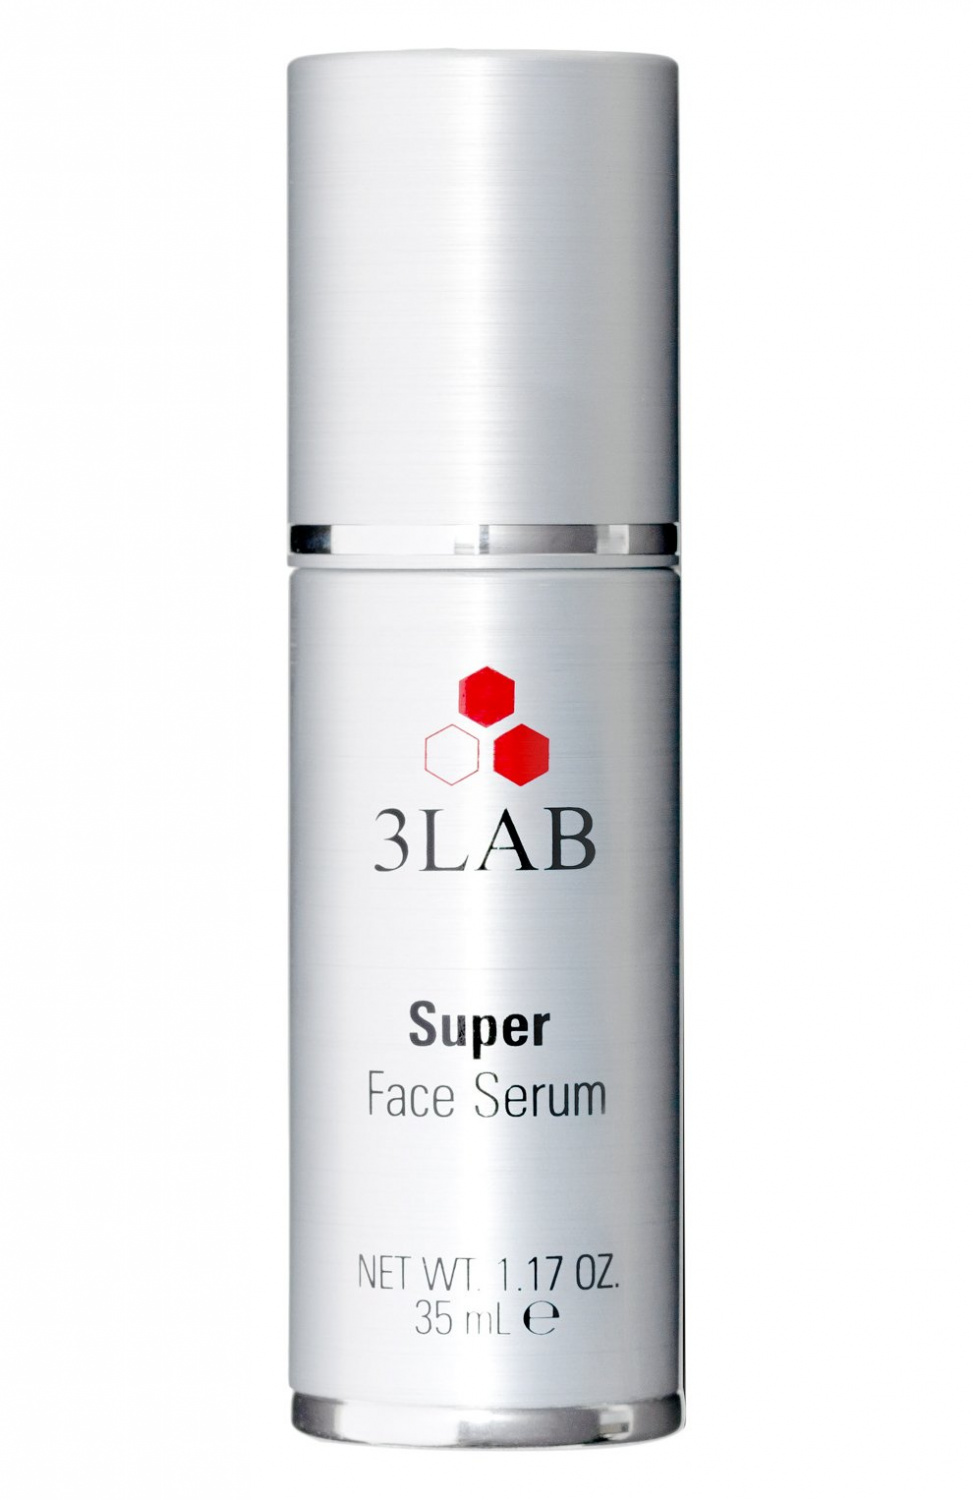 3LAB Super Face Serum 35ml - интернет-магазин профессиональной косметики Spadream, изображение 37311